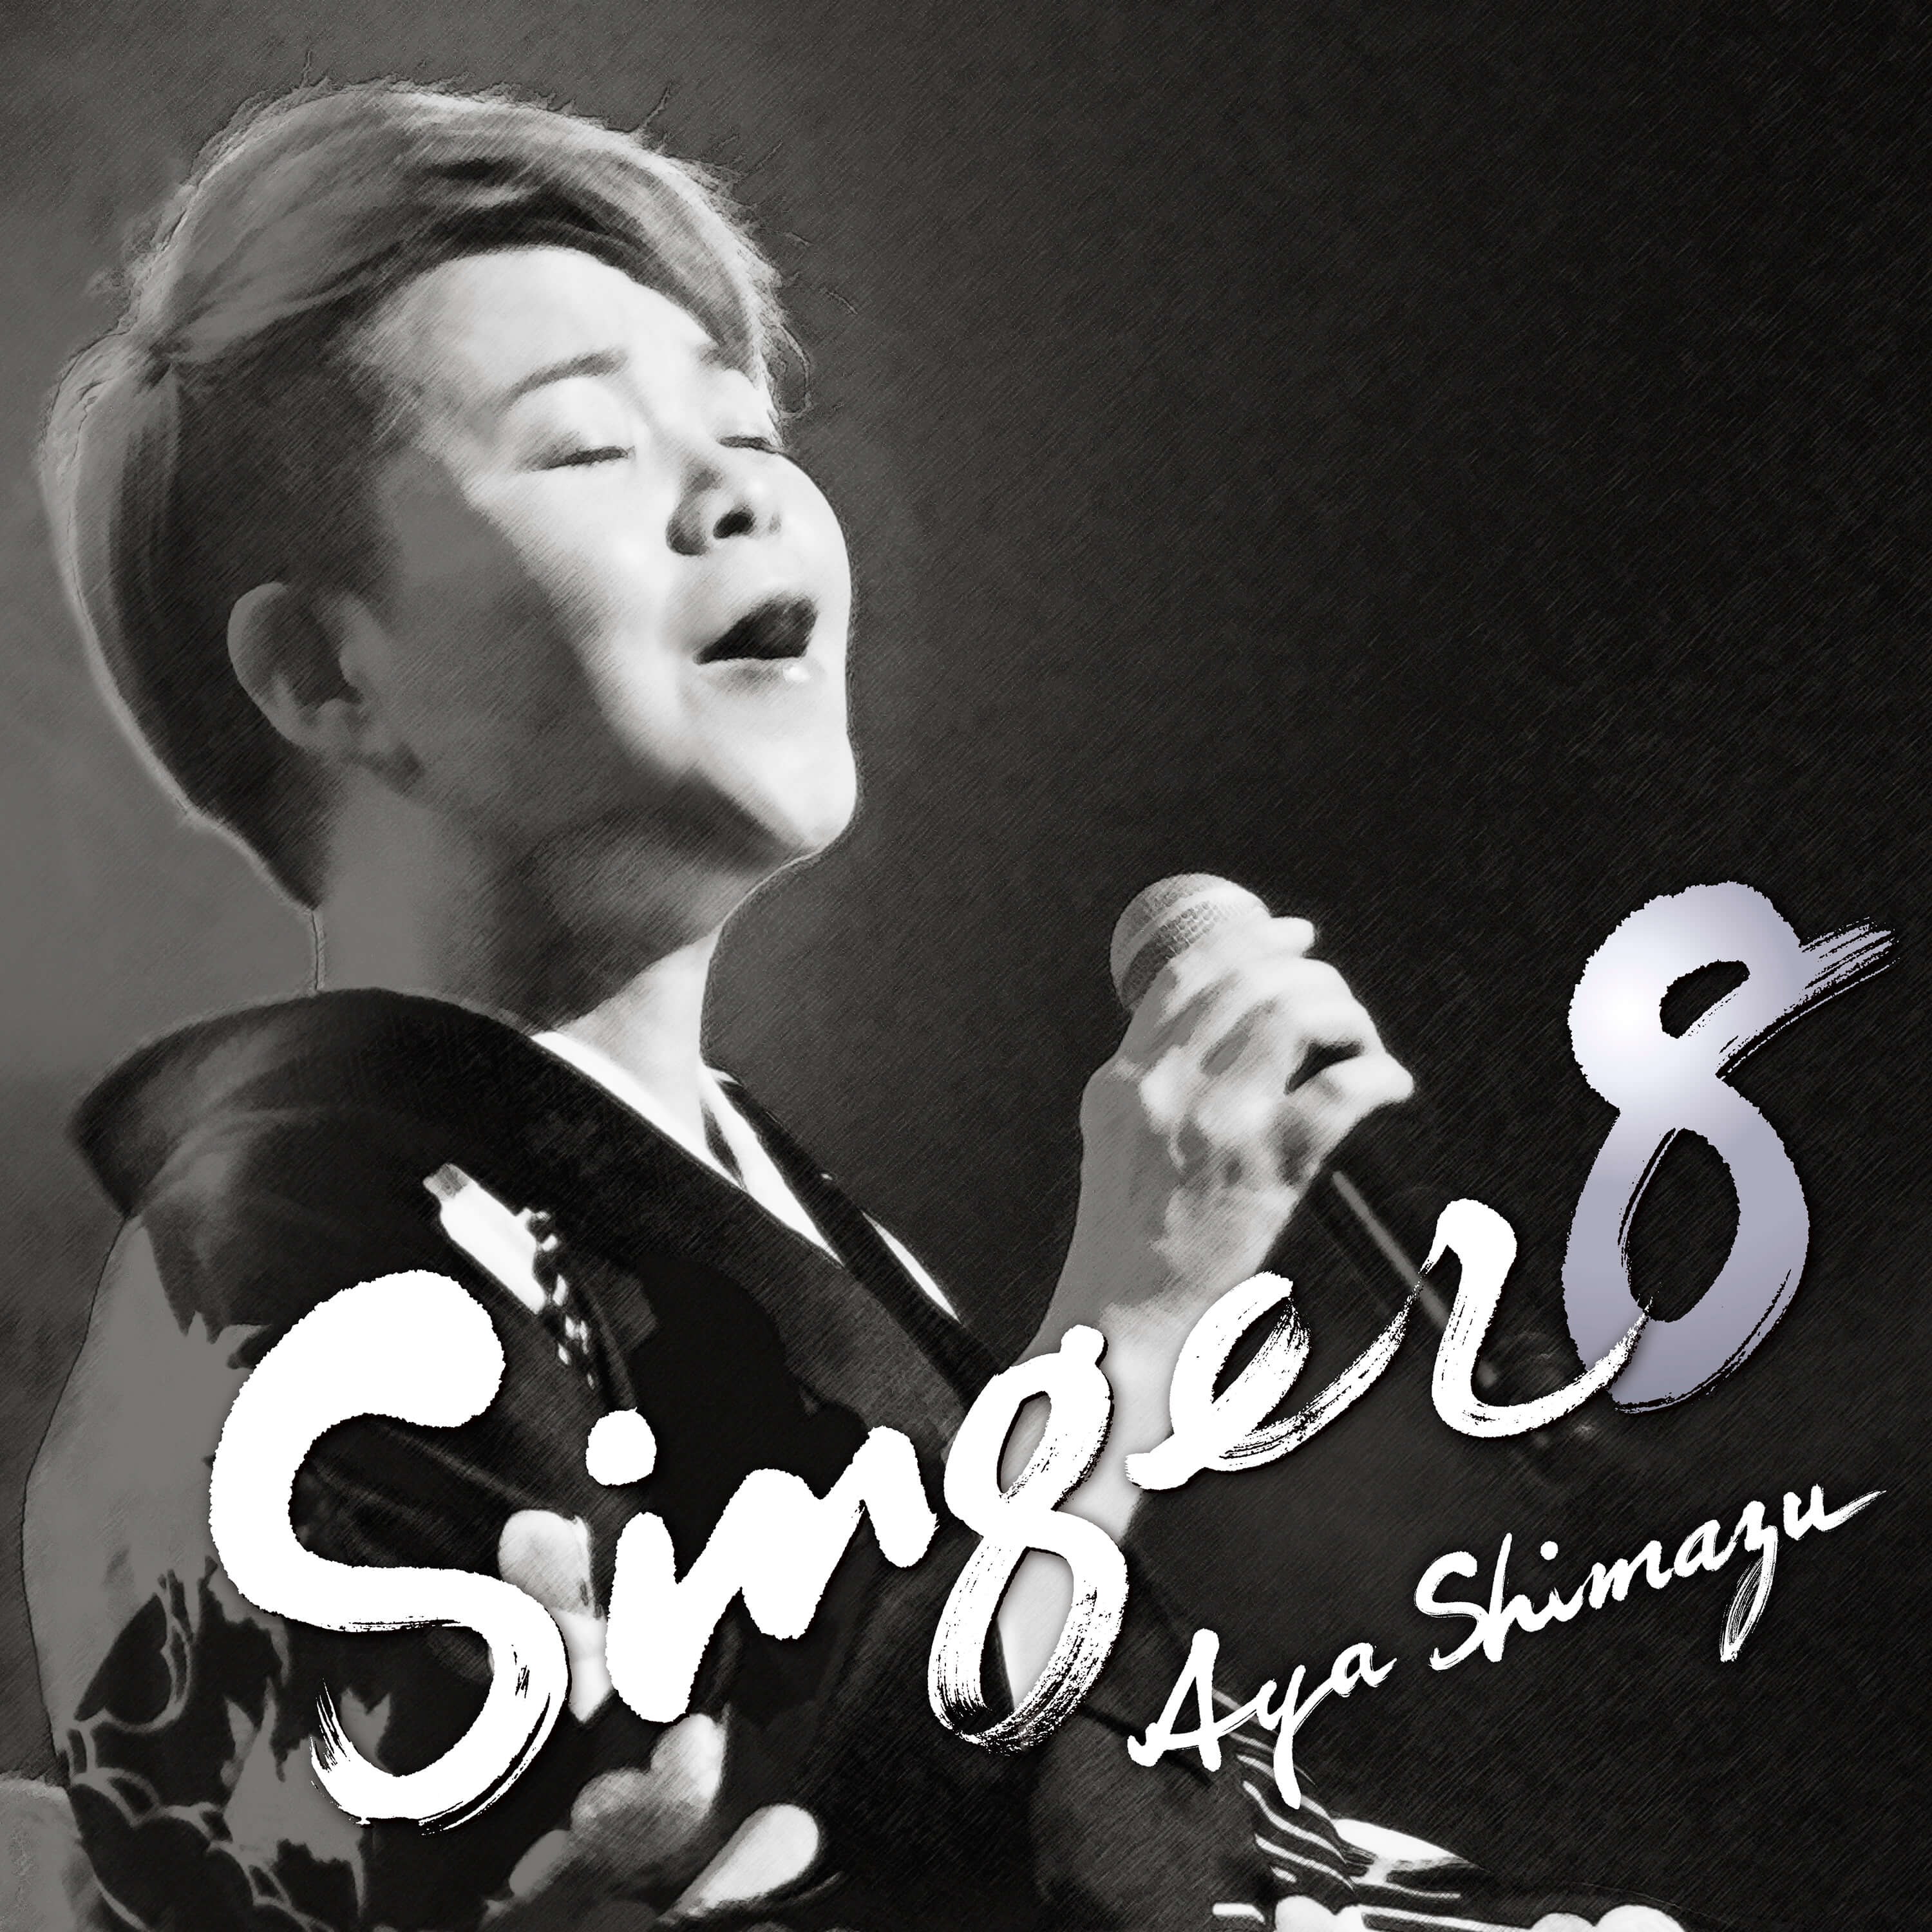 singer8